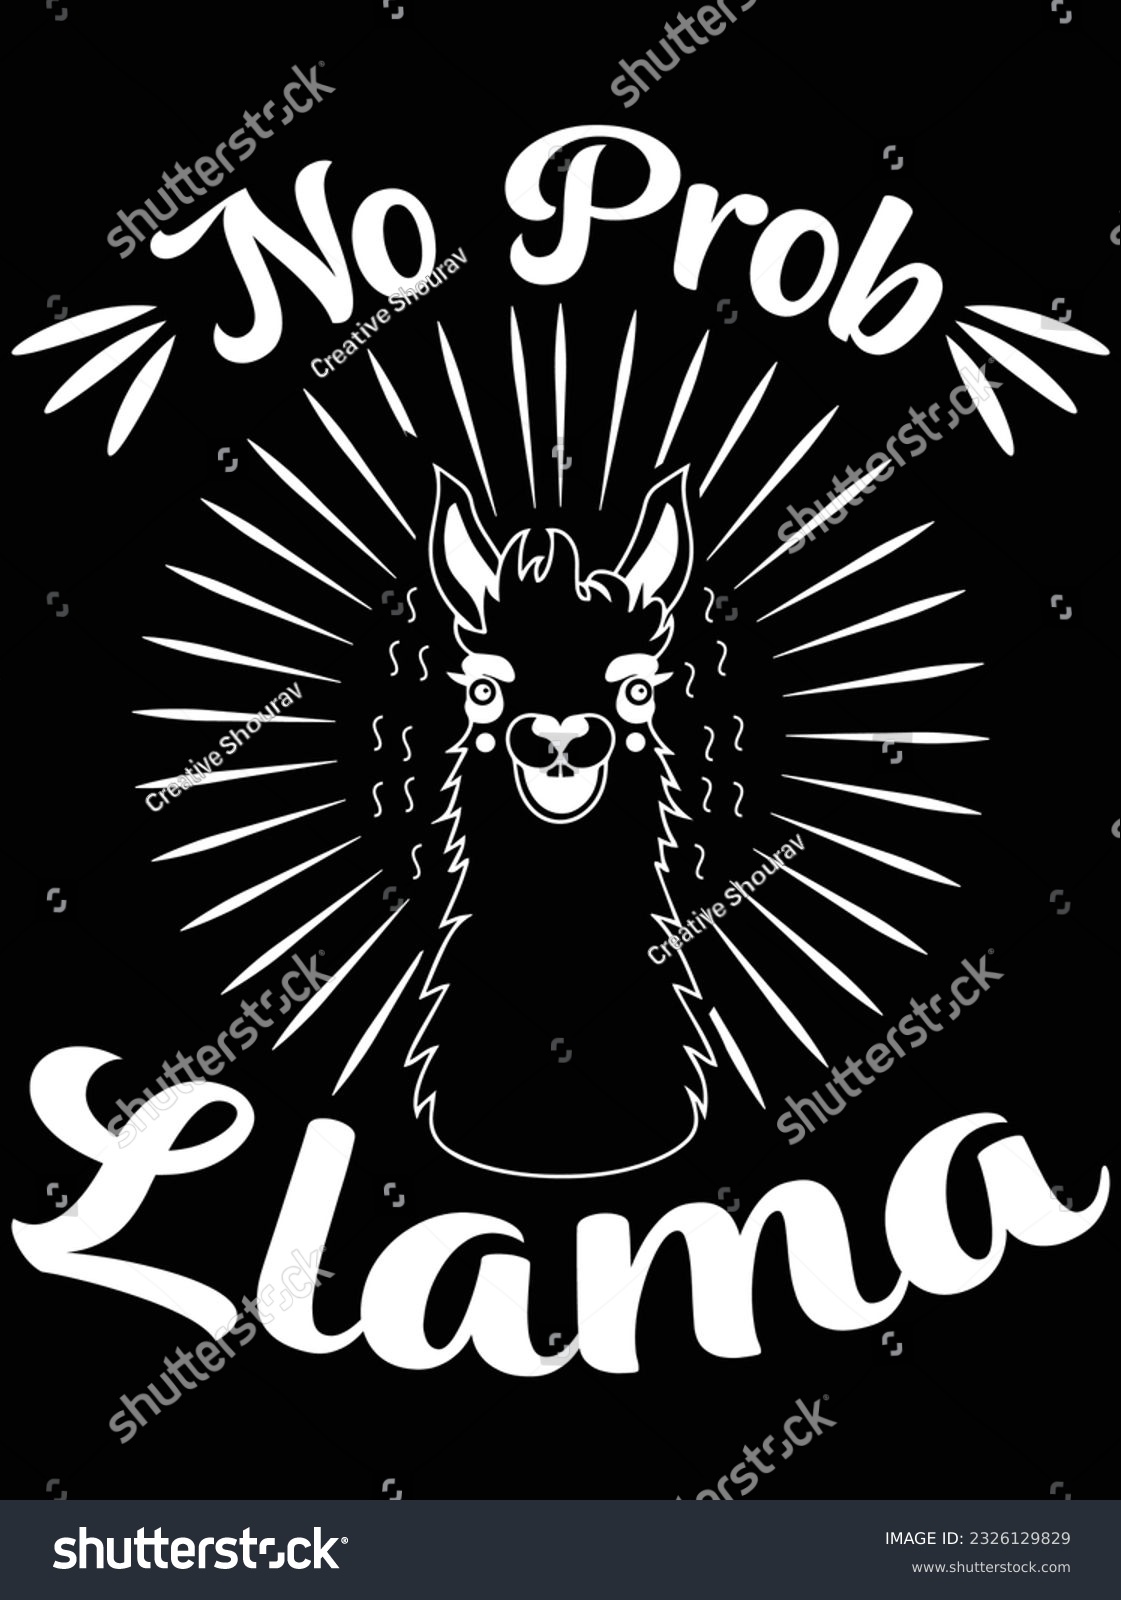 SVG of No prob llama vector art design, eps file. design file for t-shirt. SVG, EPS cuttable design file svg